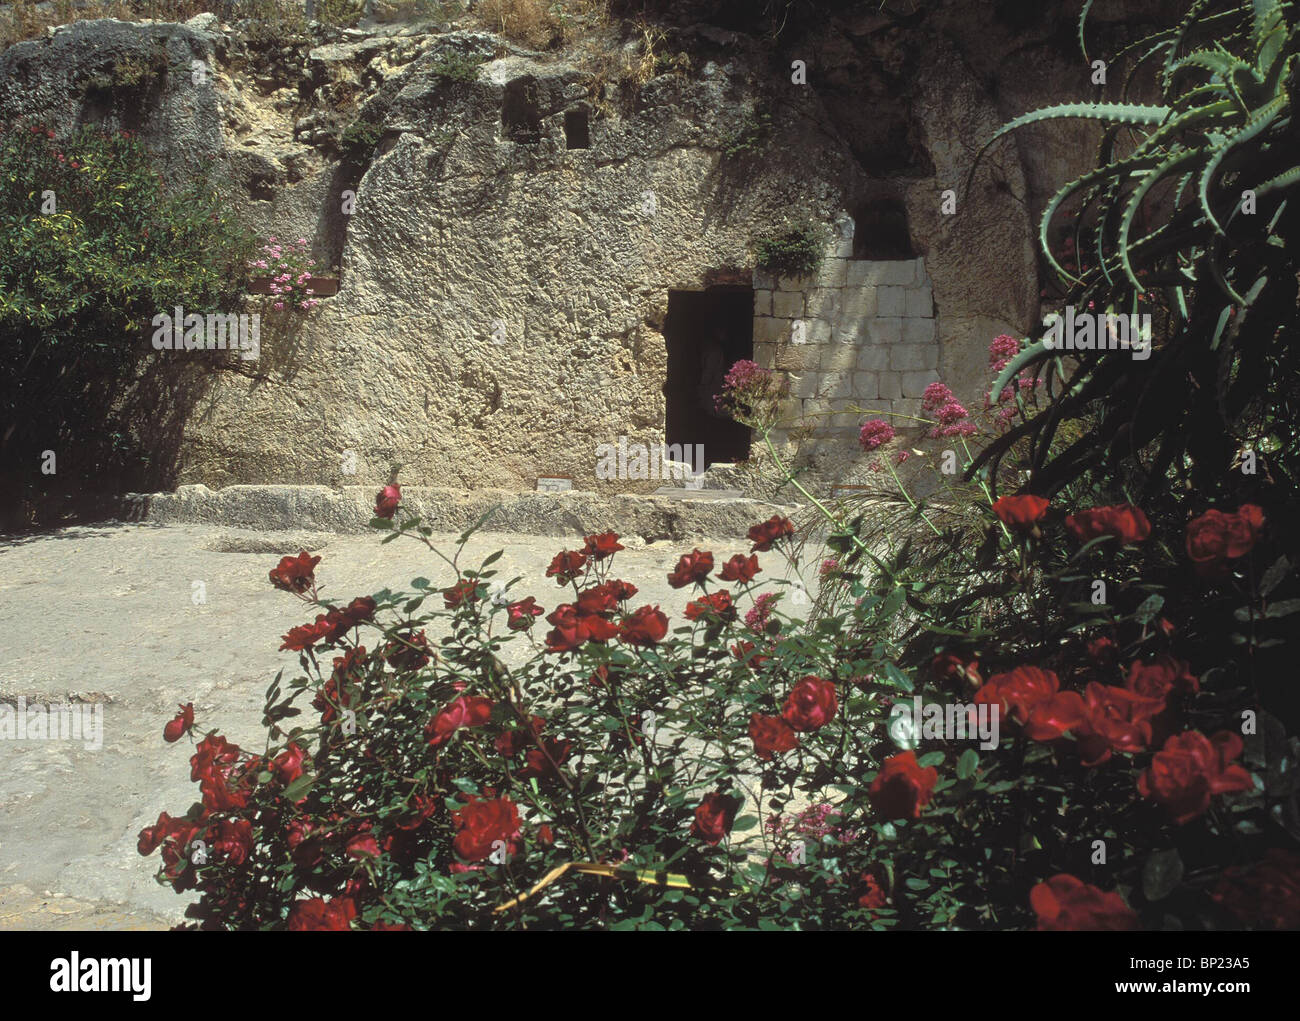 Tomba del giardino o il calvario secondo alcune tradizioni questo è il sito di sepoltura di Cristo al di fuori delle mura della città di Foto Stock